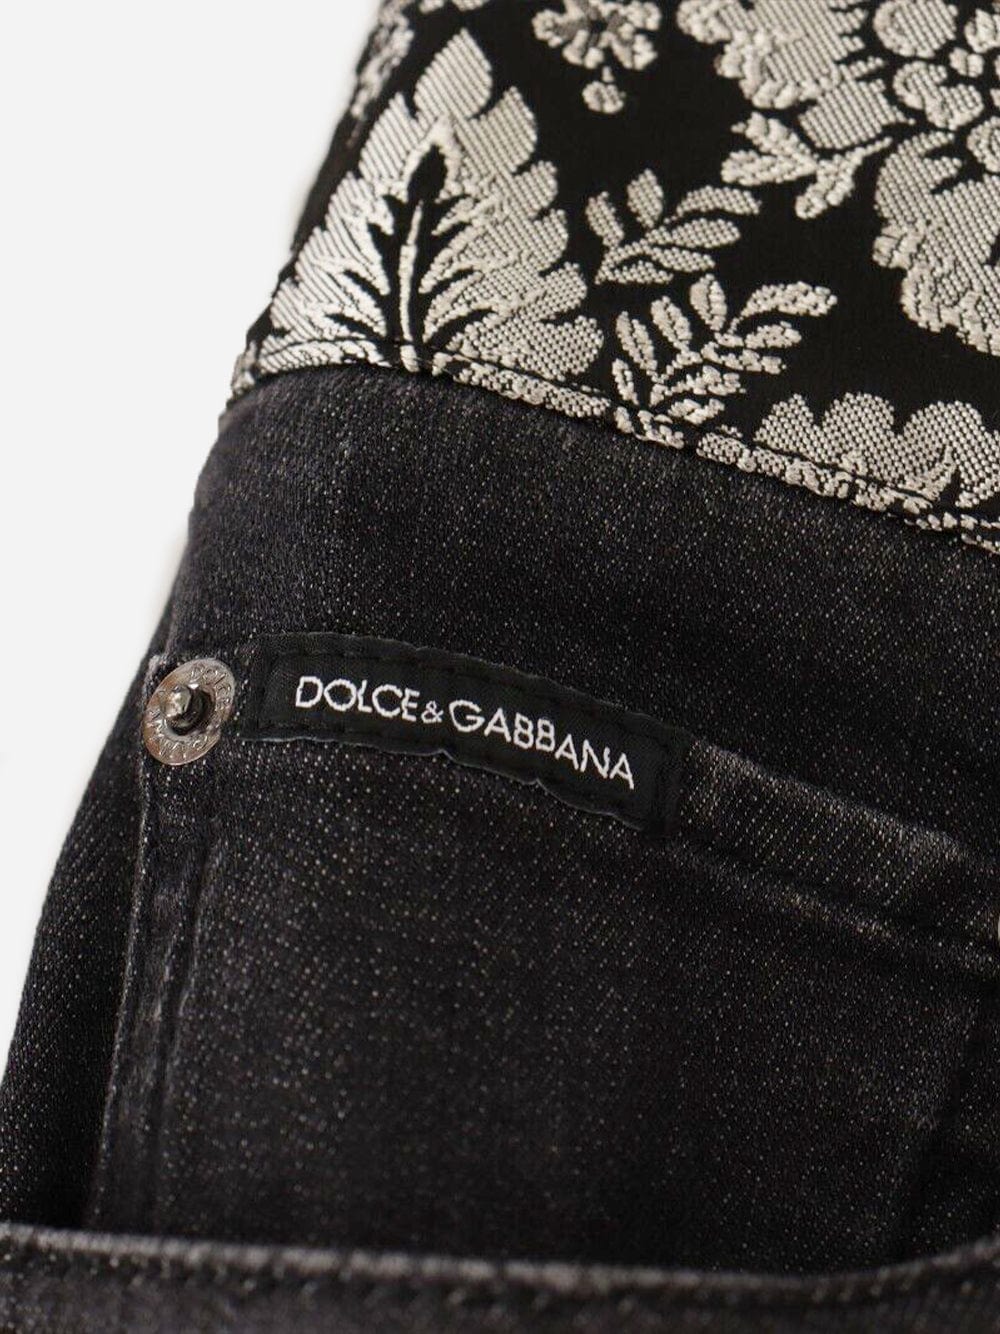 Dolce & Gabbana Jacquard Waist Jeans